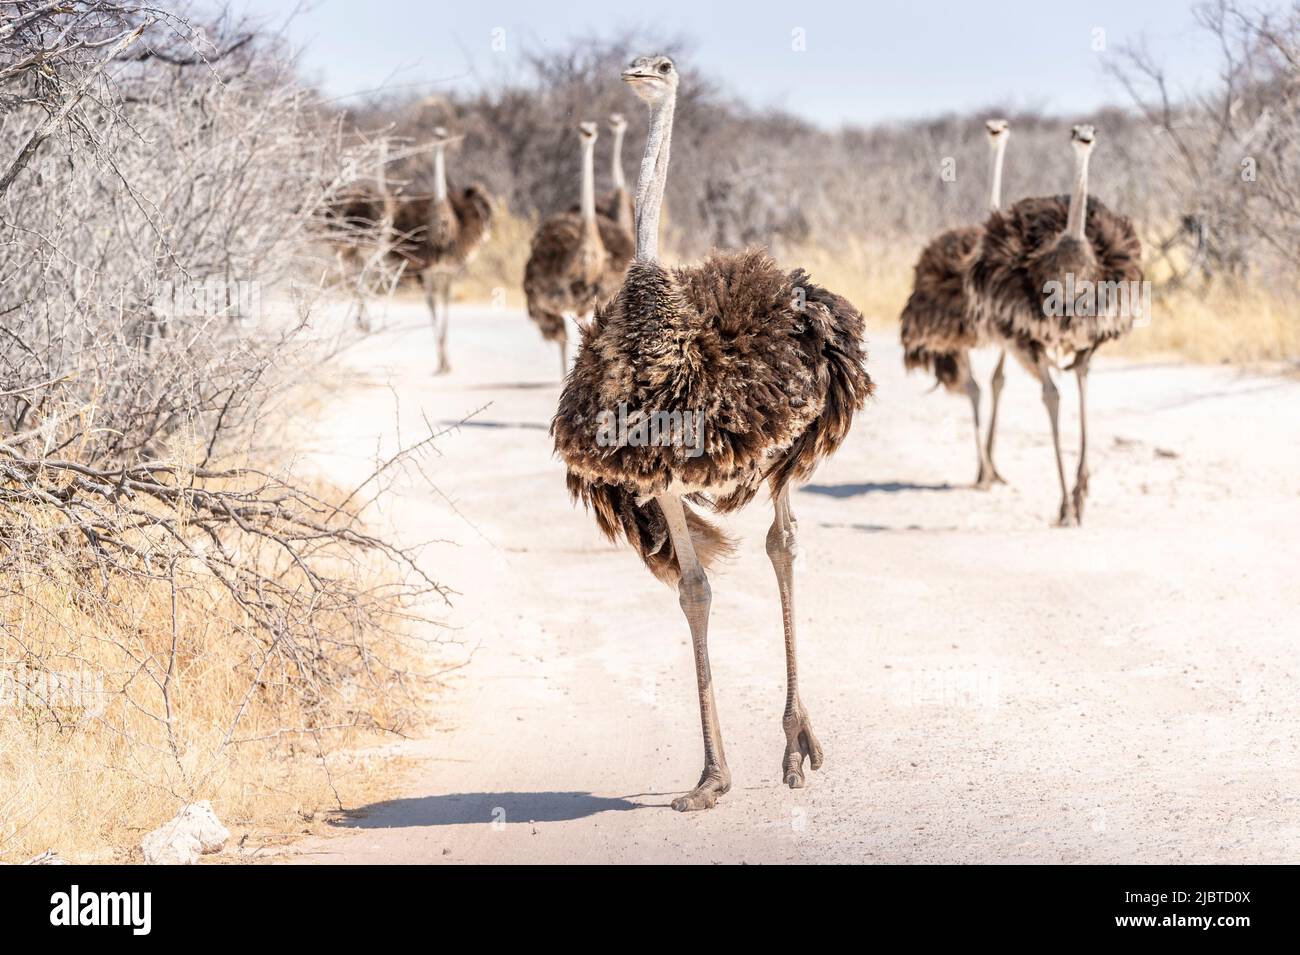 Namibie, région de Kunene, Parc national d'Etosha, bassin d'eau Klein Okevi, Ostrich africain (Struthio camelus) sur la piste Banque D'Images